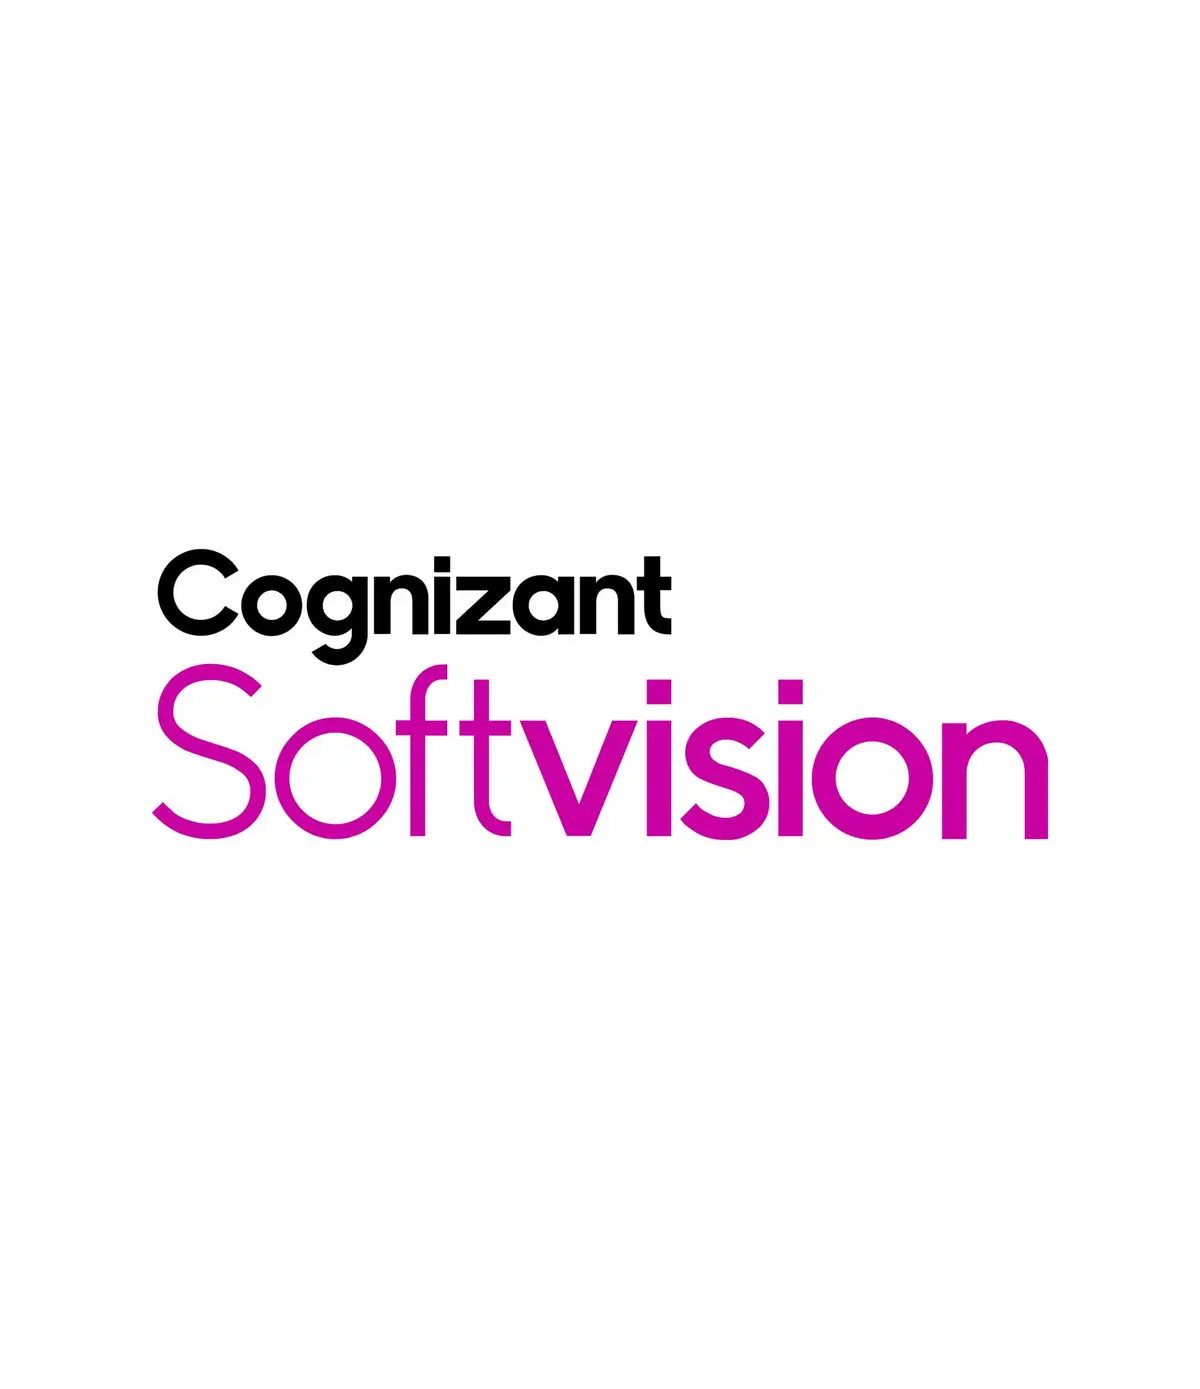 Cognizant SoftVision